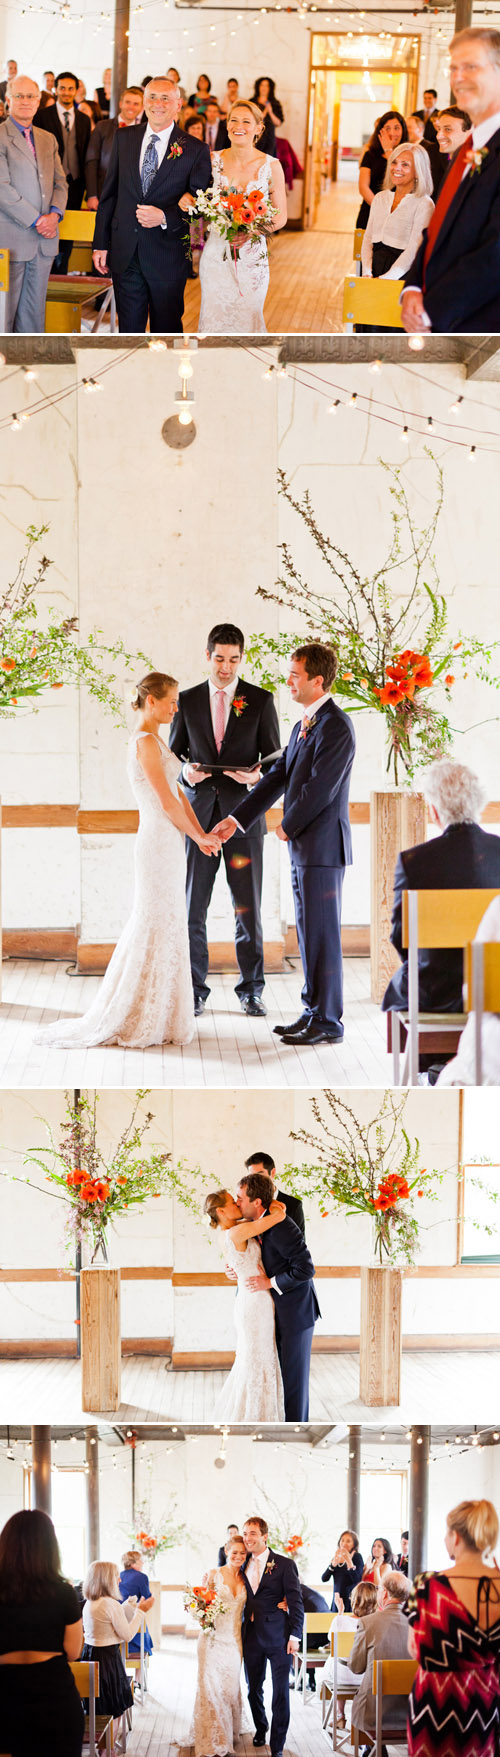 Springtime Sausalito Wedding with Orange Decor - Flowers by Studio Choo - Photos by Mastin Studio | Junebug Weddings